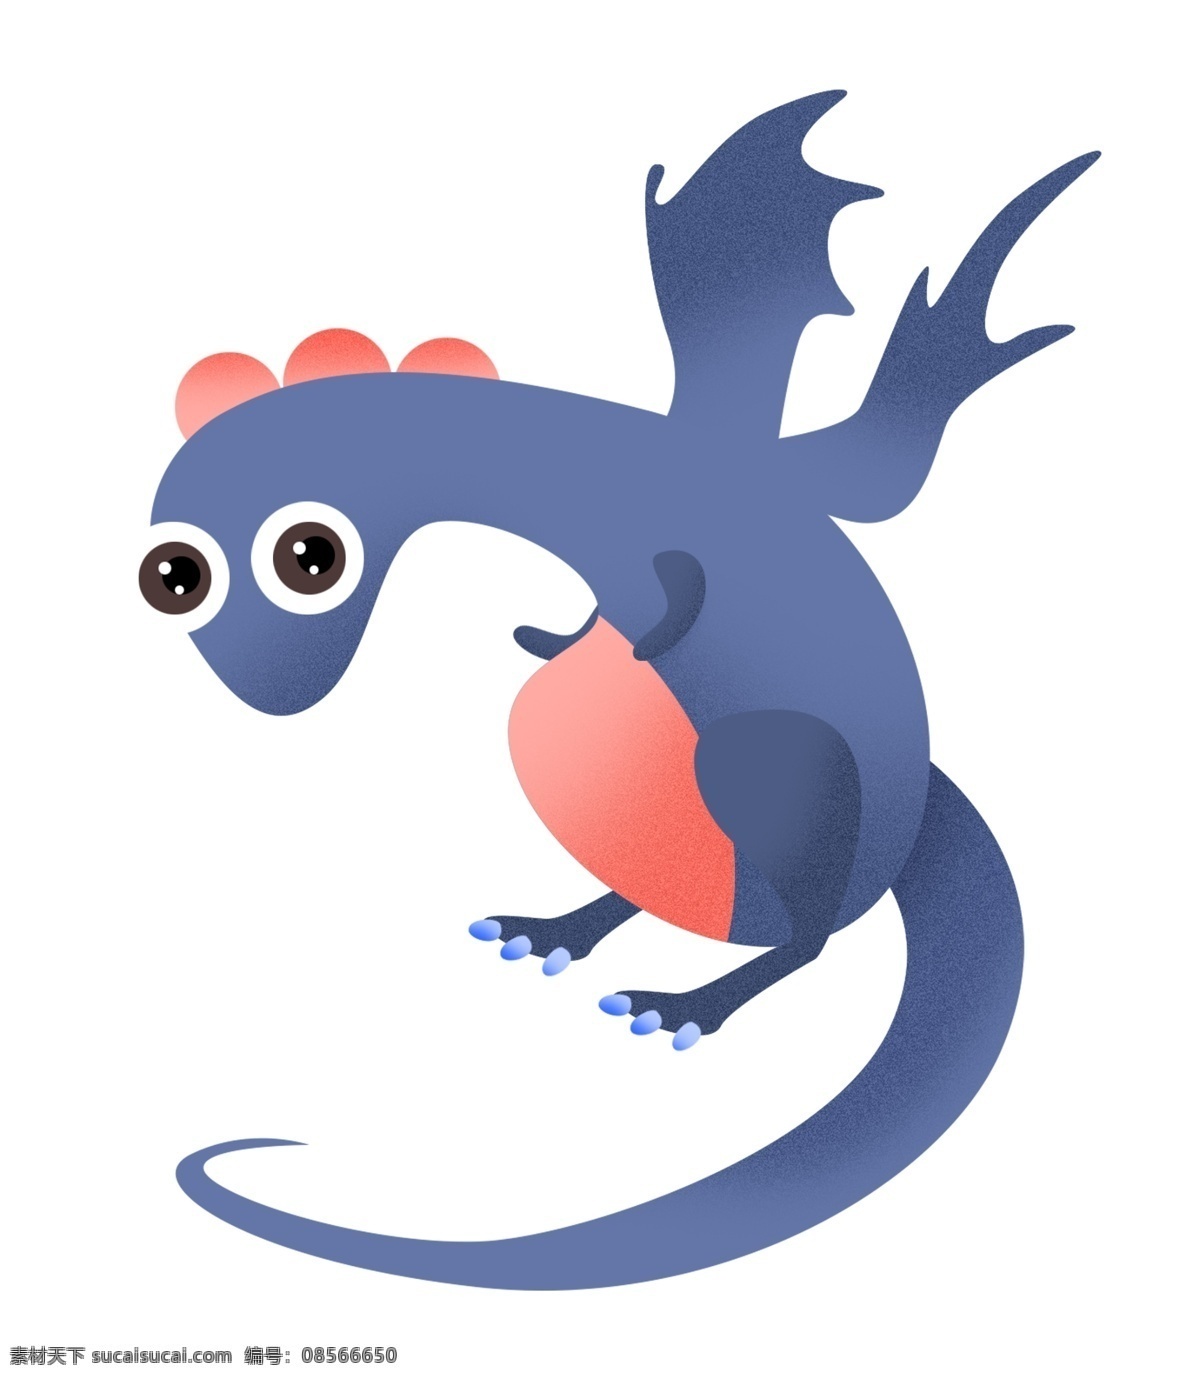 可爱 蓝色 恐龙 插画 蓝色恐龙 可爱的恐龙 蓝色恐龙插画 一只恐龙 卡通恐龙 动物 玩具恐龙